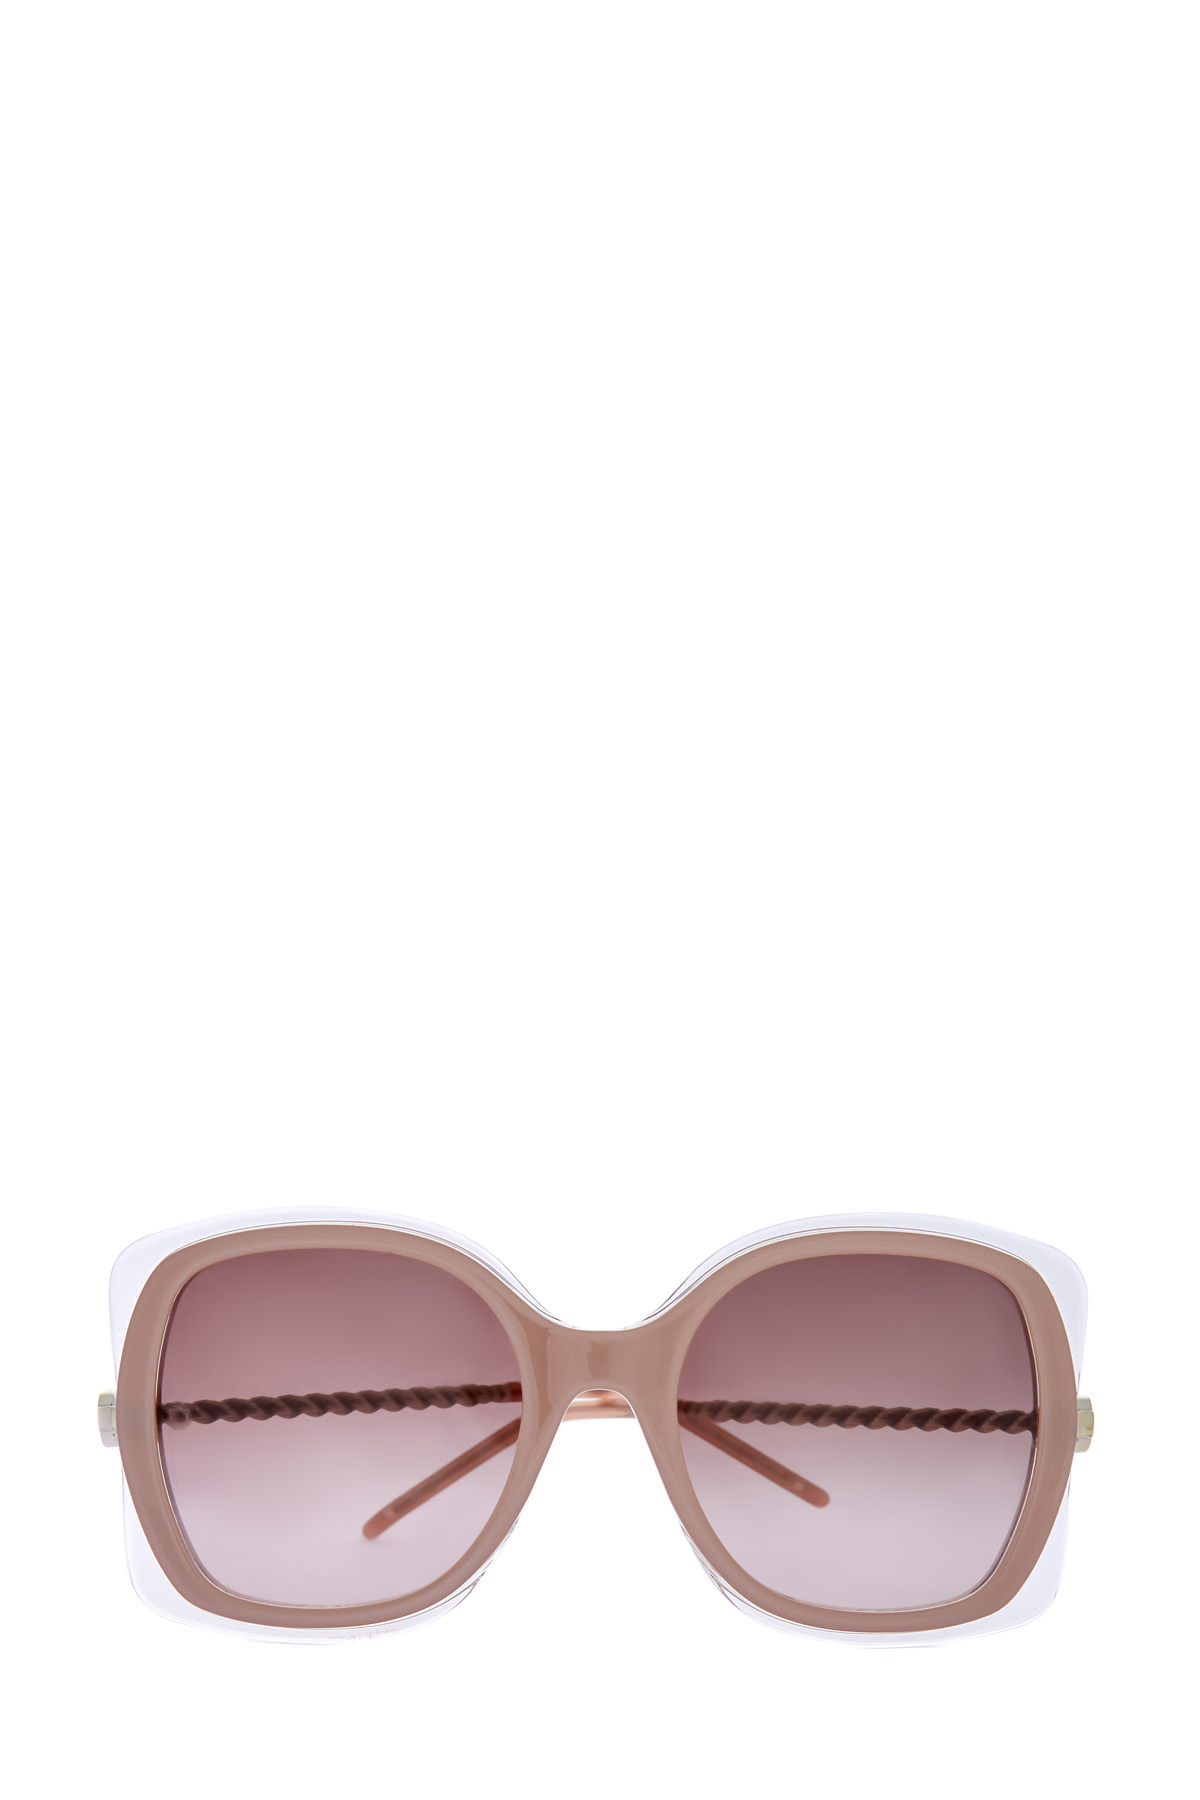 Солнцезащитные очки с полупрозрачными контурами и витыми дужками ELIE SAAB, размер 40